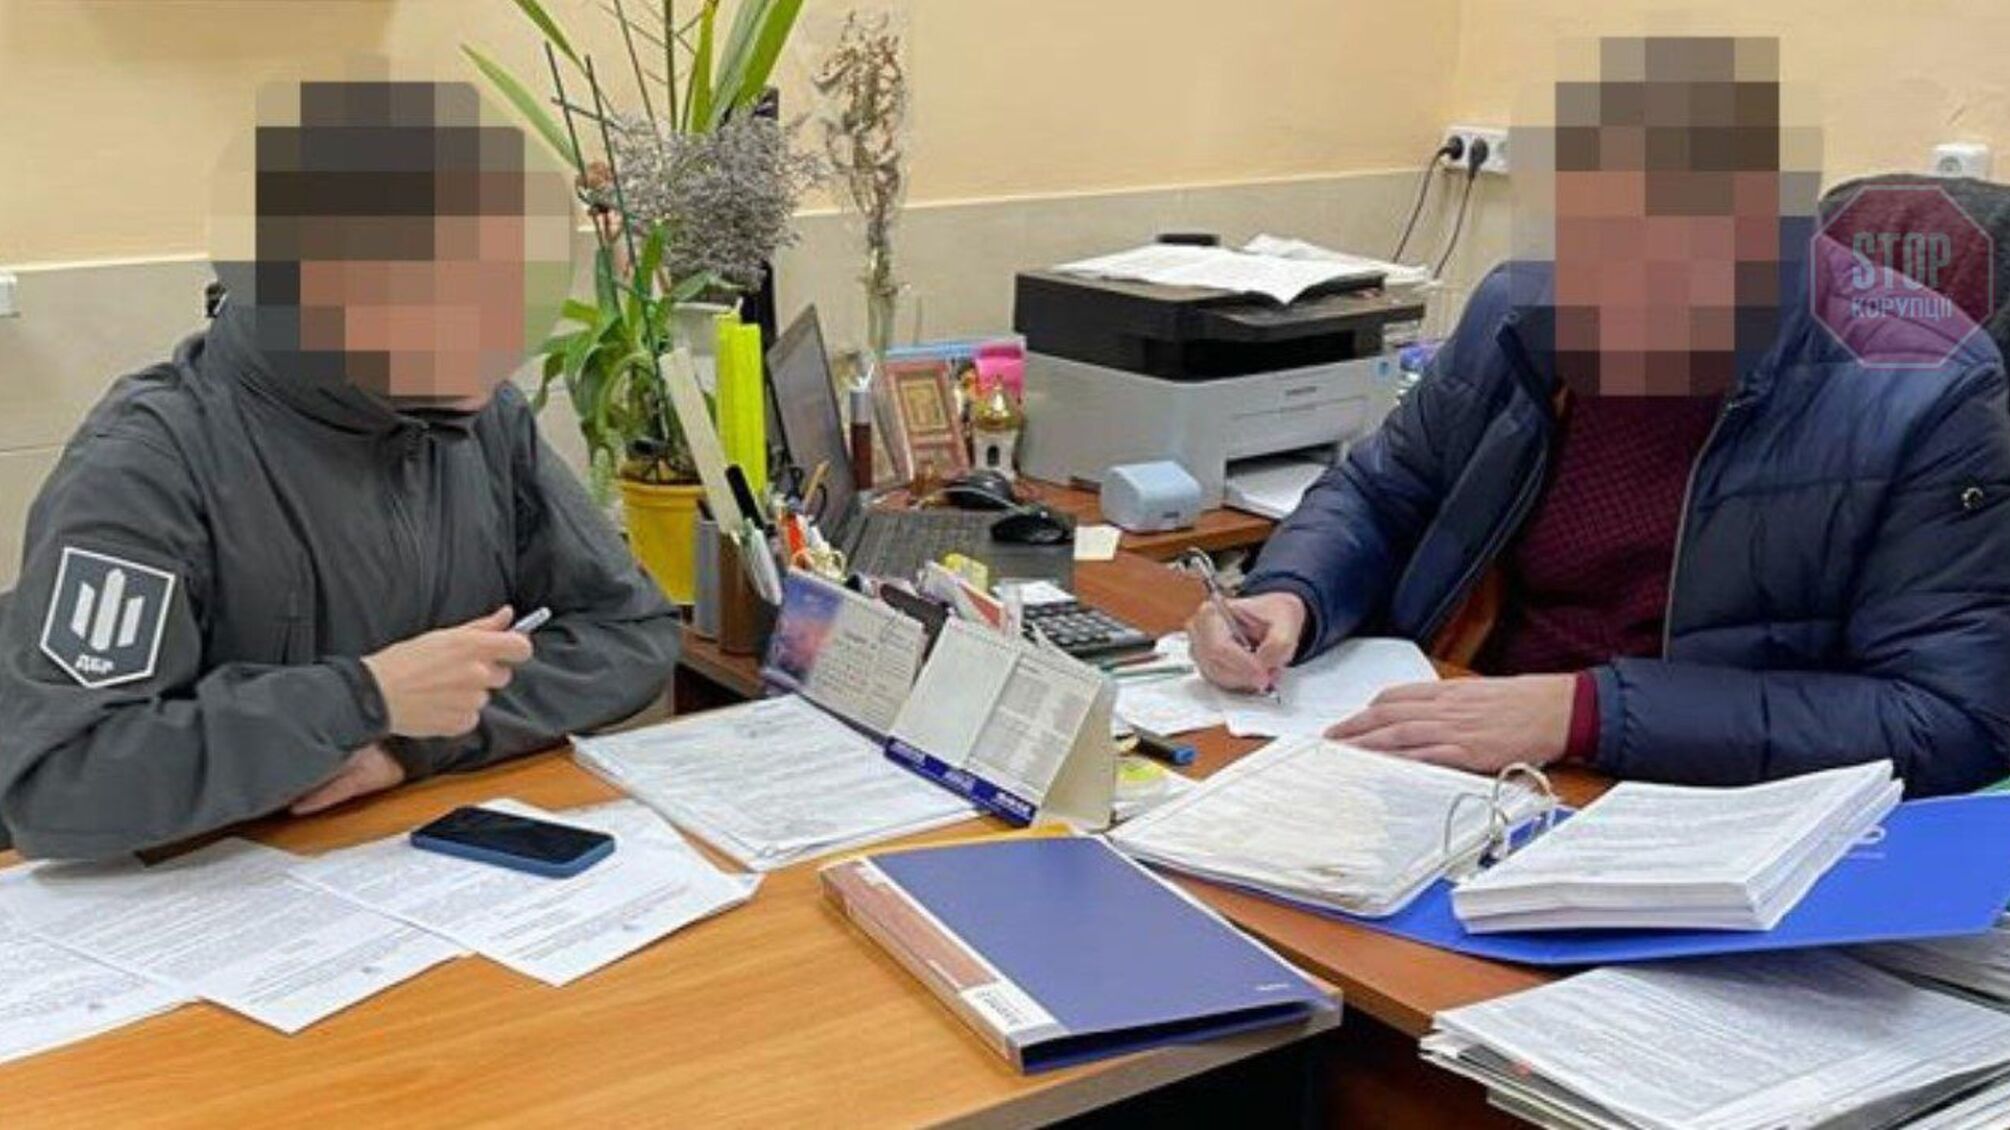 Зношене обладнання за ціною нового: ДБР викрило чиновника Донецької облради